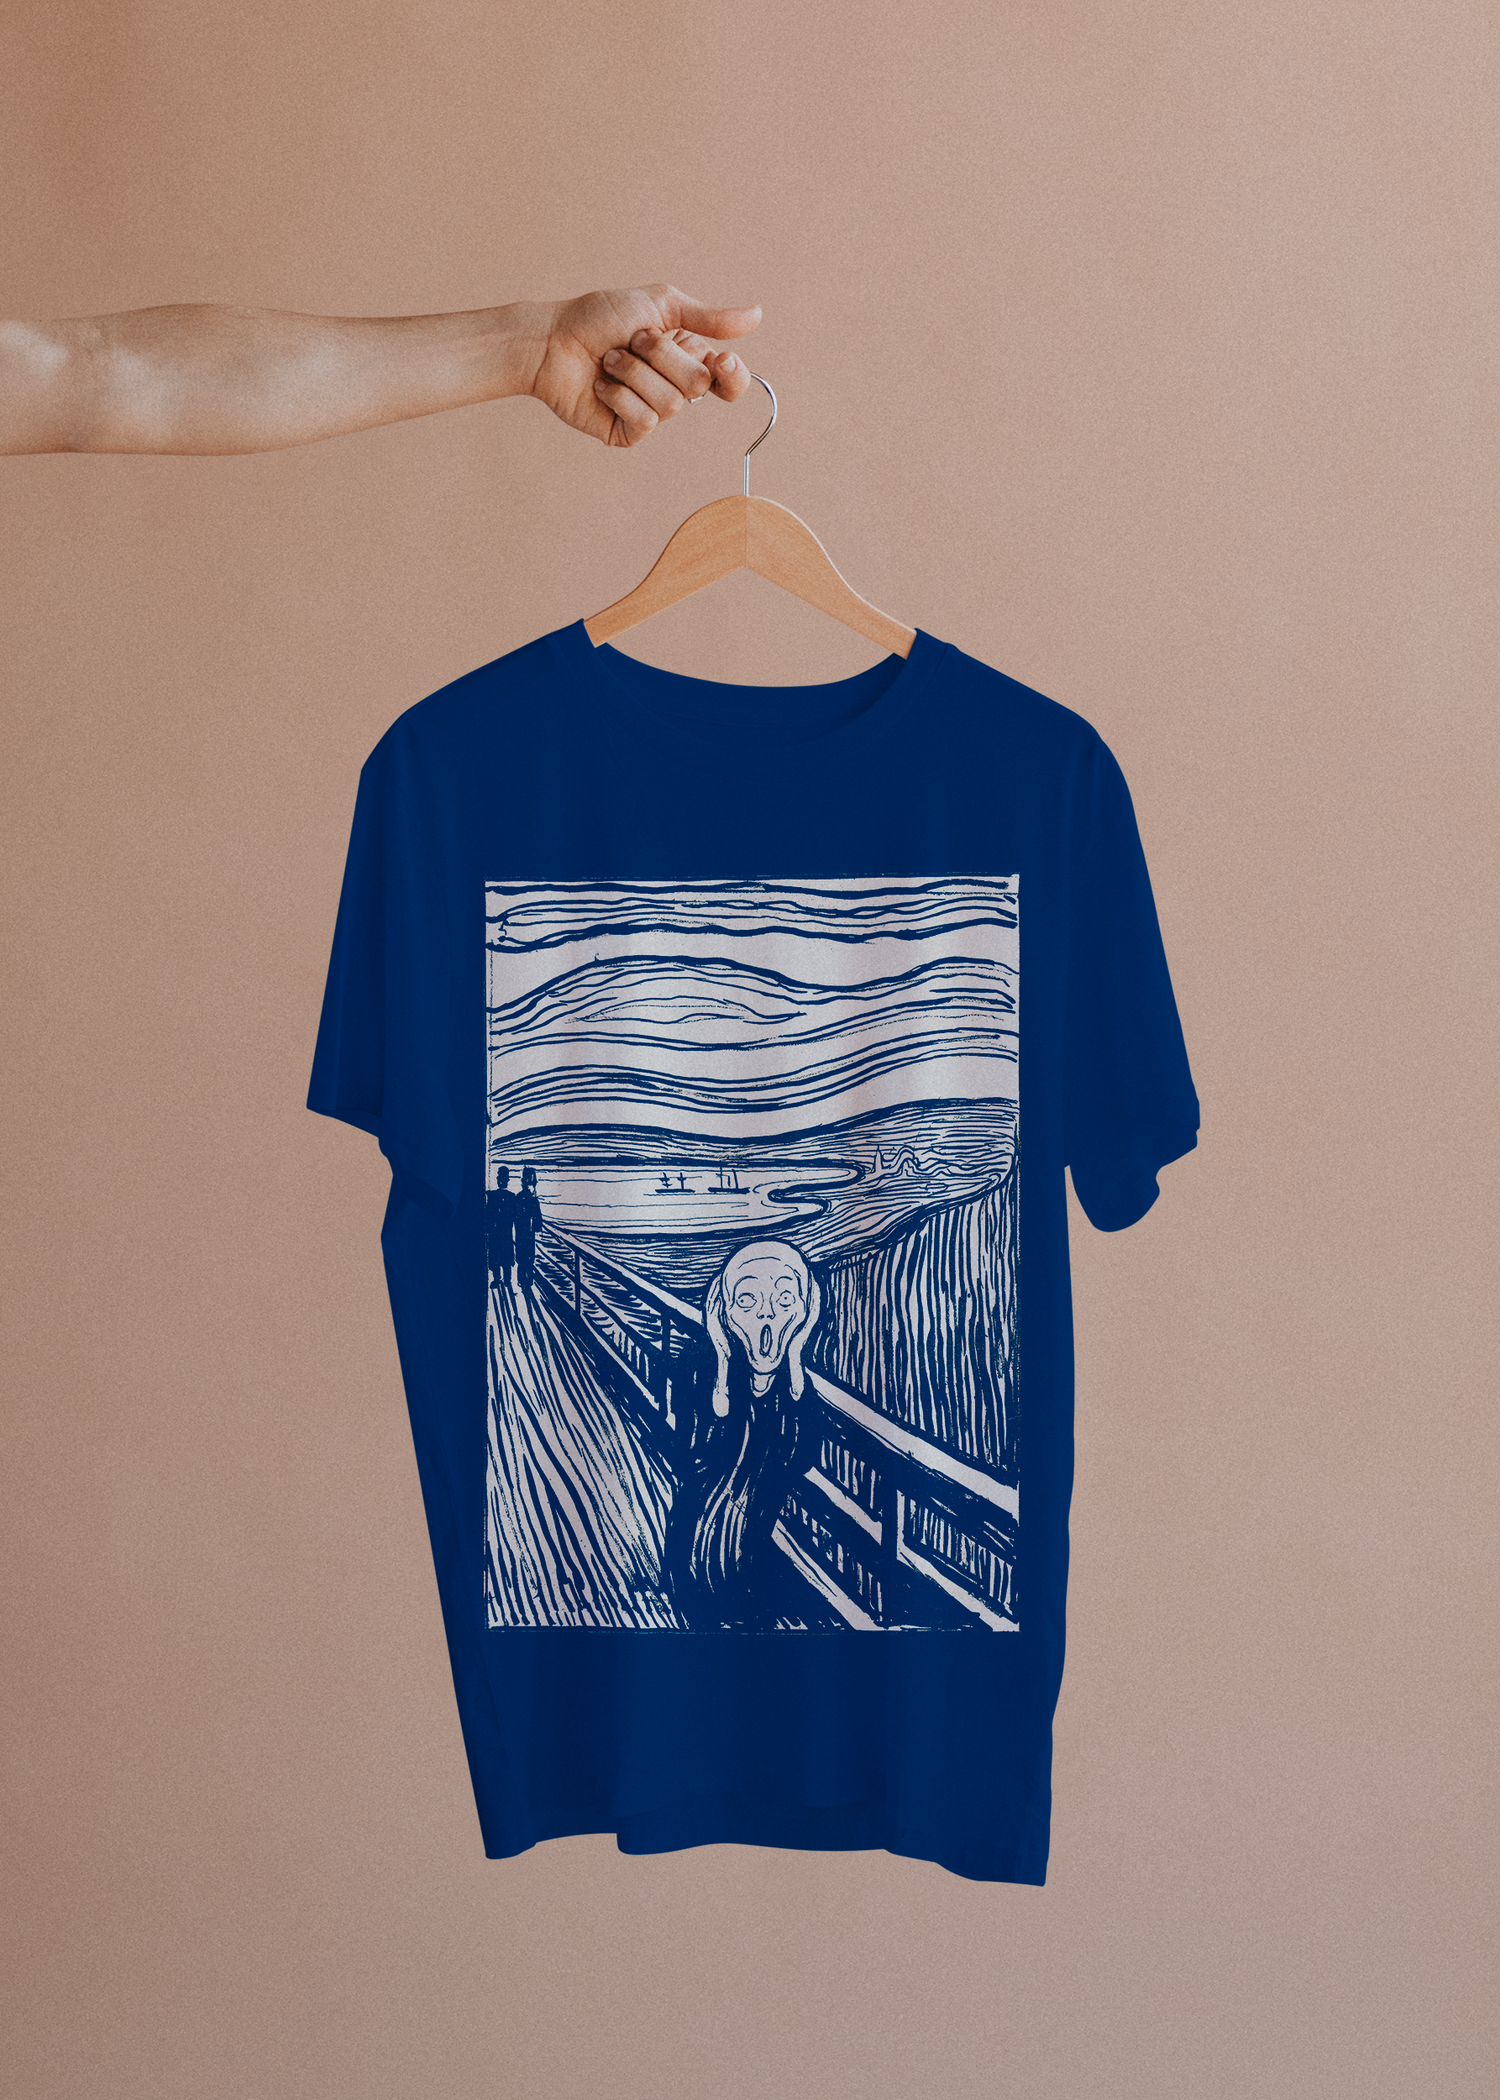 Camiseta de arte - O grito Edvard Munch